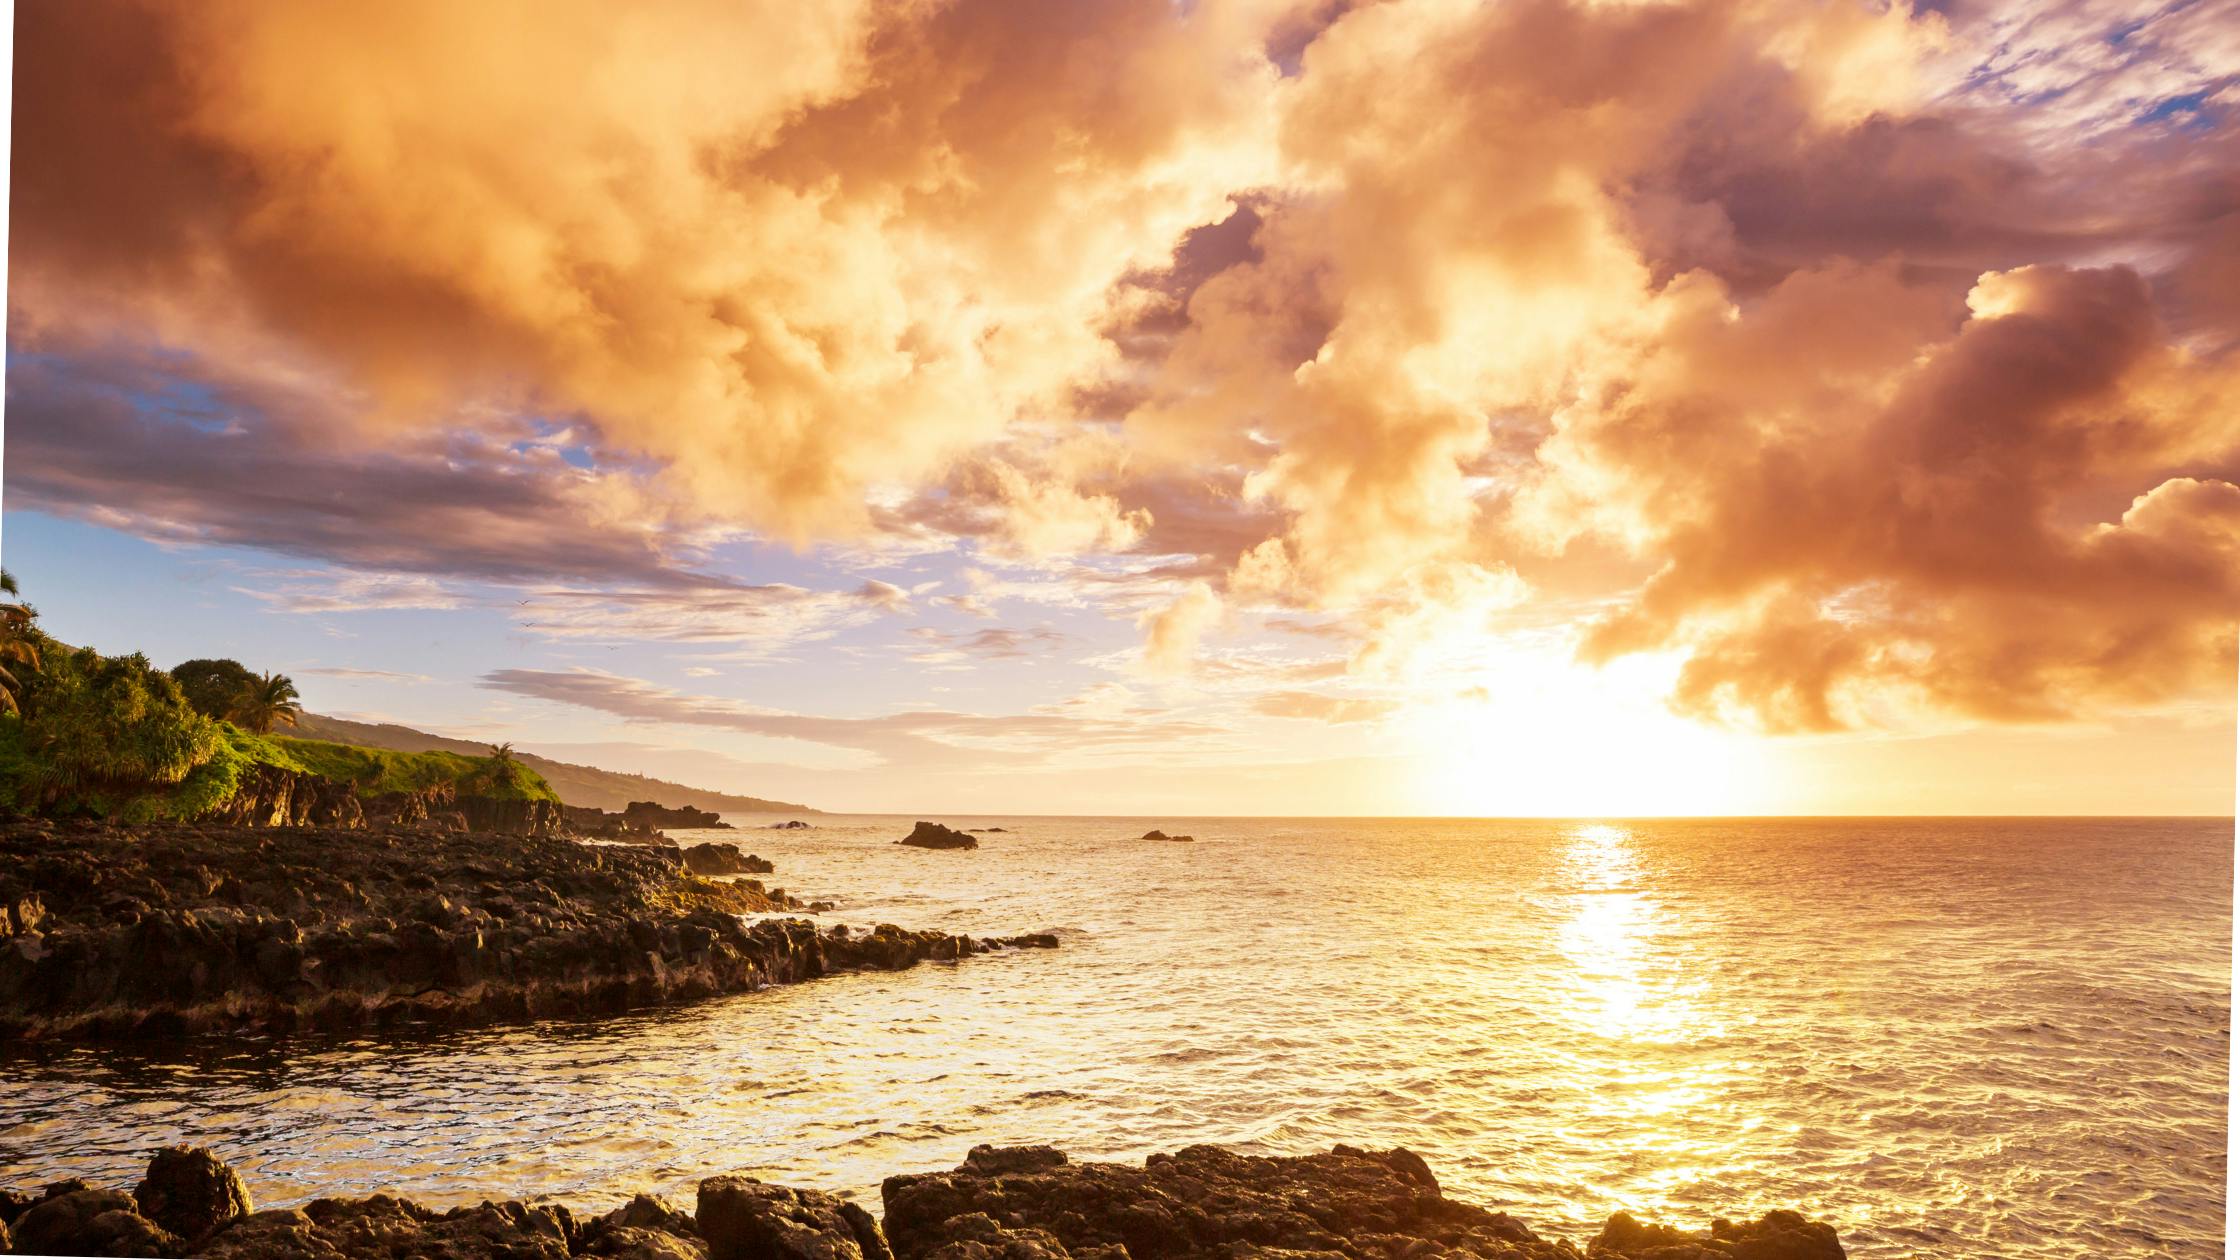 Best Hawaii Island for a Honeymoon